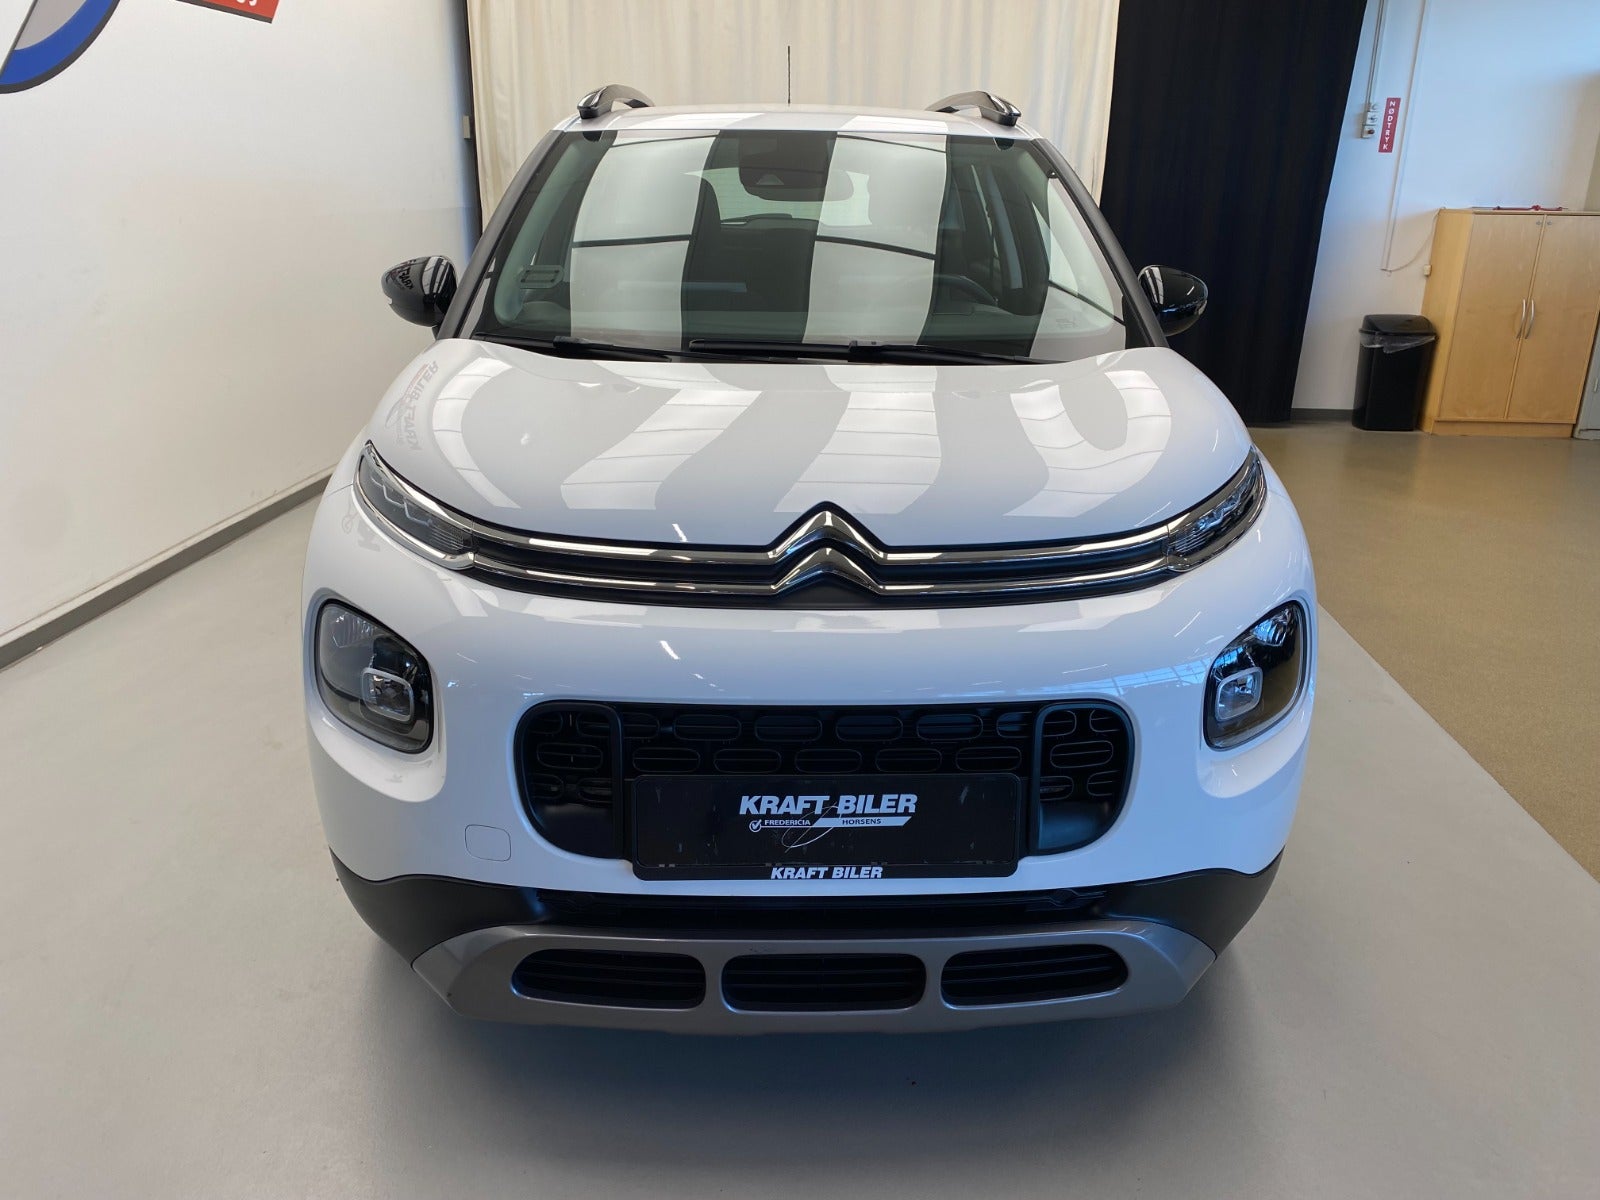 Billede af Citroën C3 Aircross 1,2 PureTech 110 Platinum